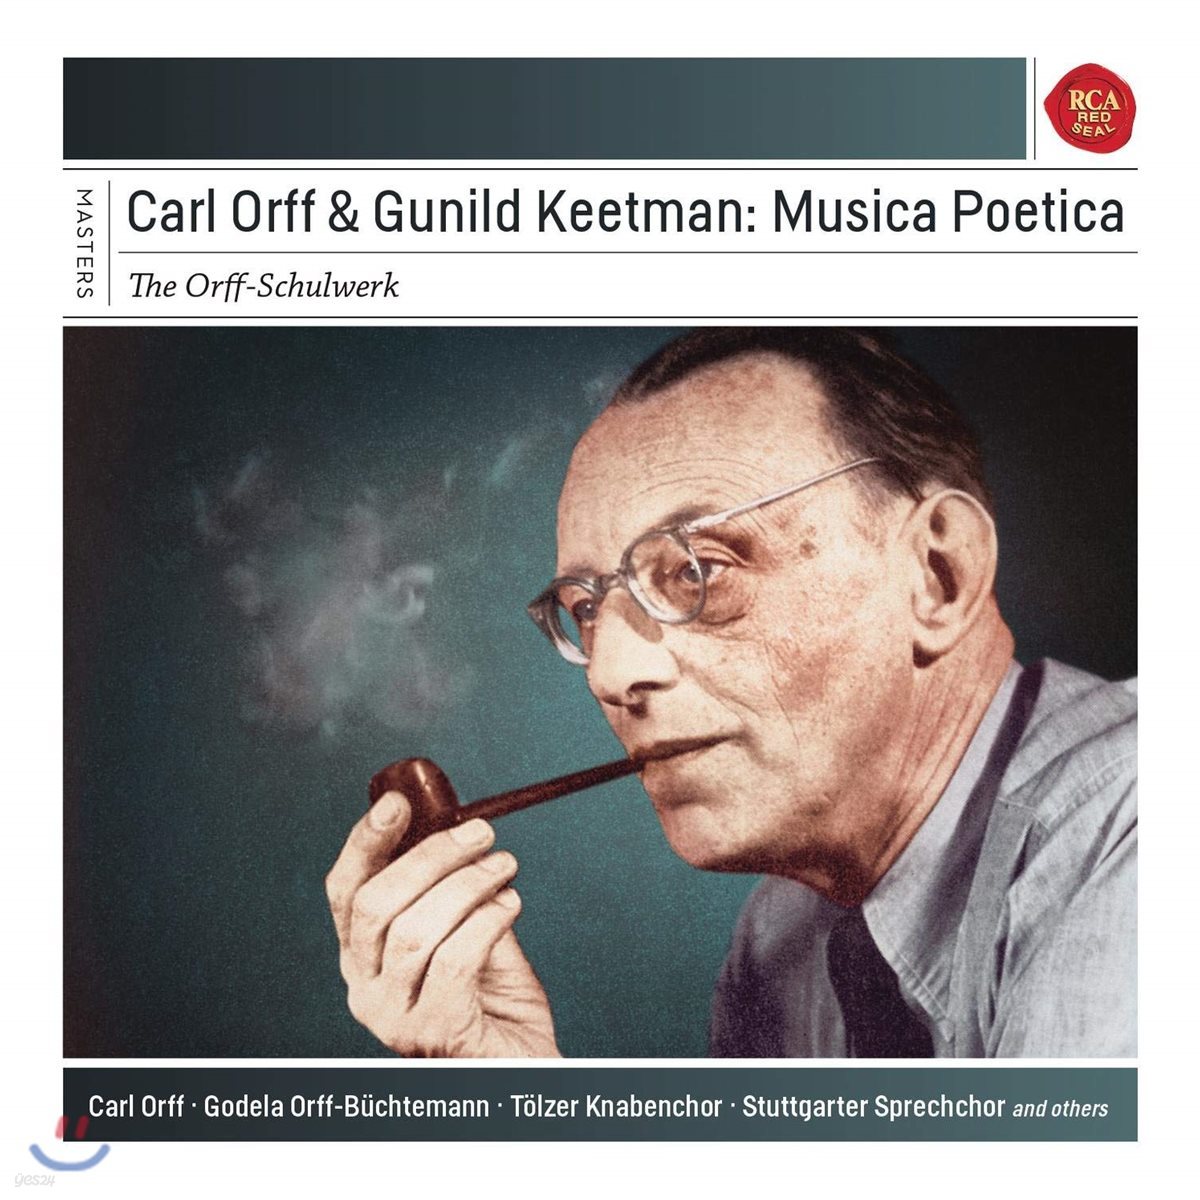 칼 오르프 & 군힐트 키트만의 뮤지카 포에티카 전집 (Carl Orff & Gunhild Keetmann: Musica Poetica)